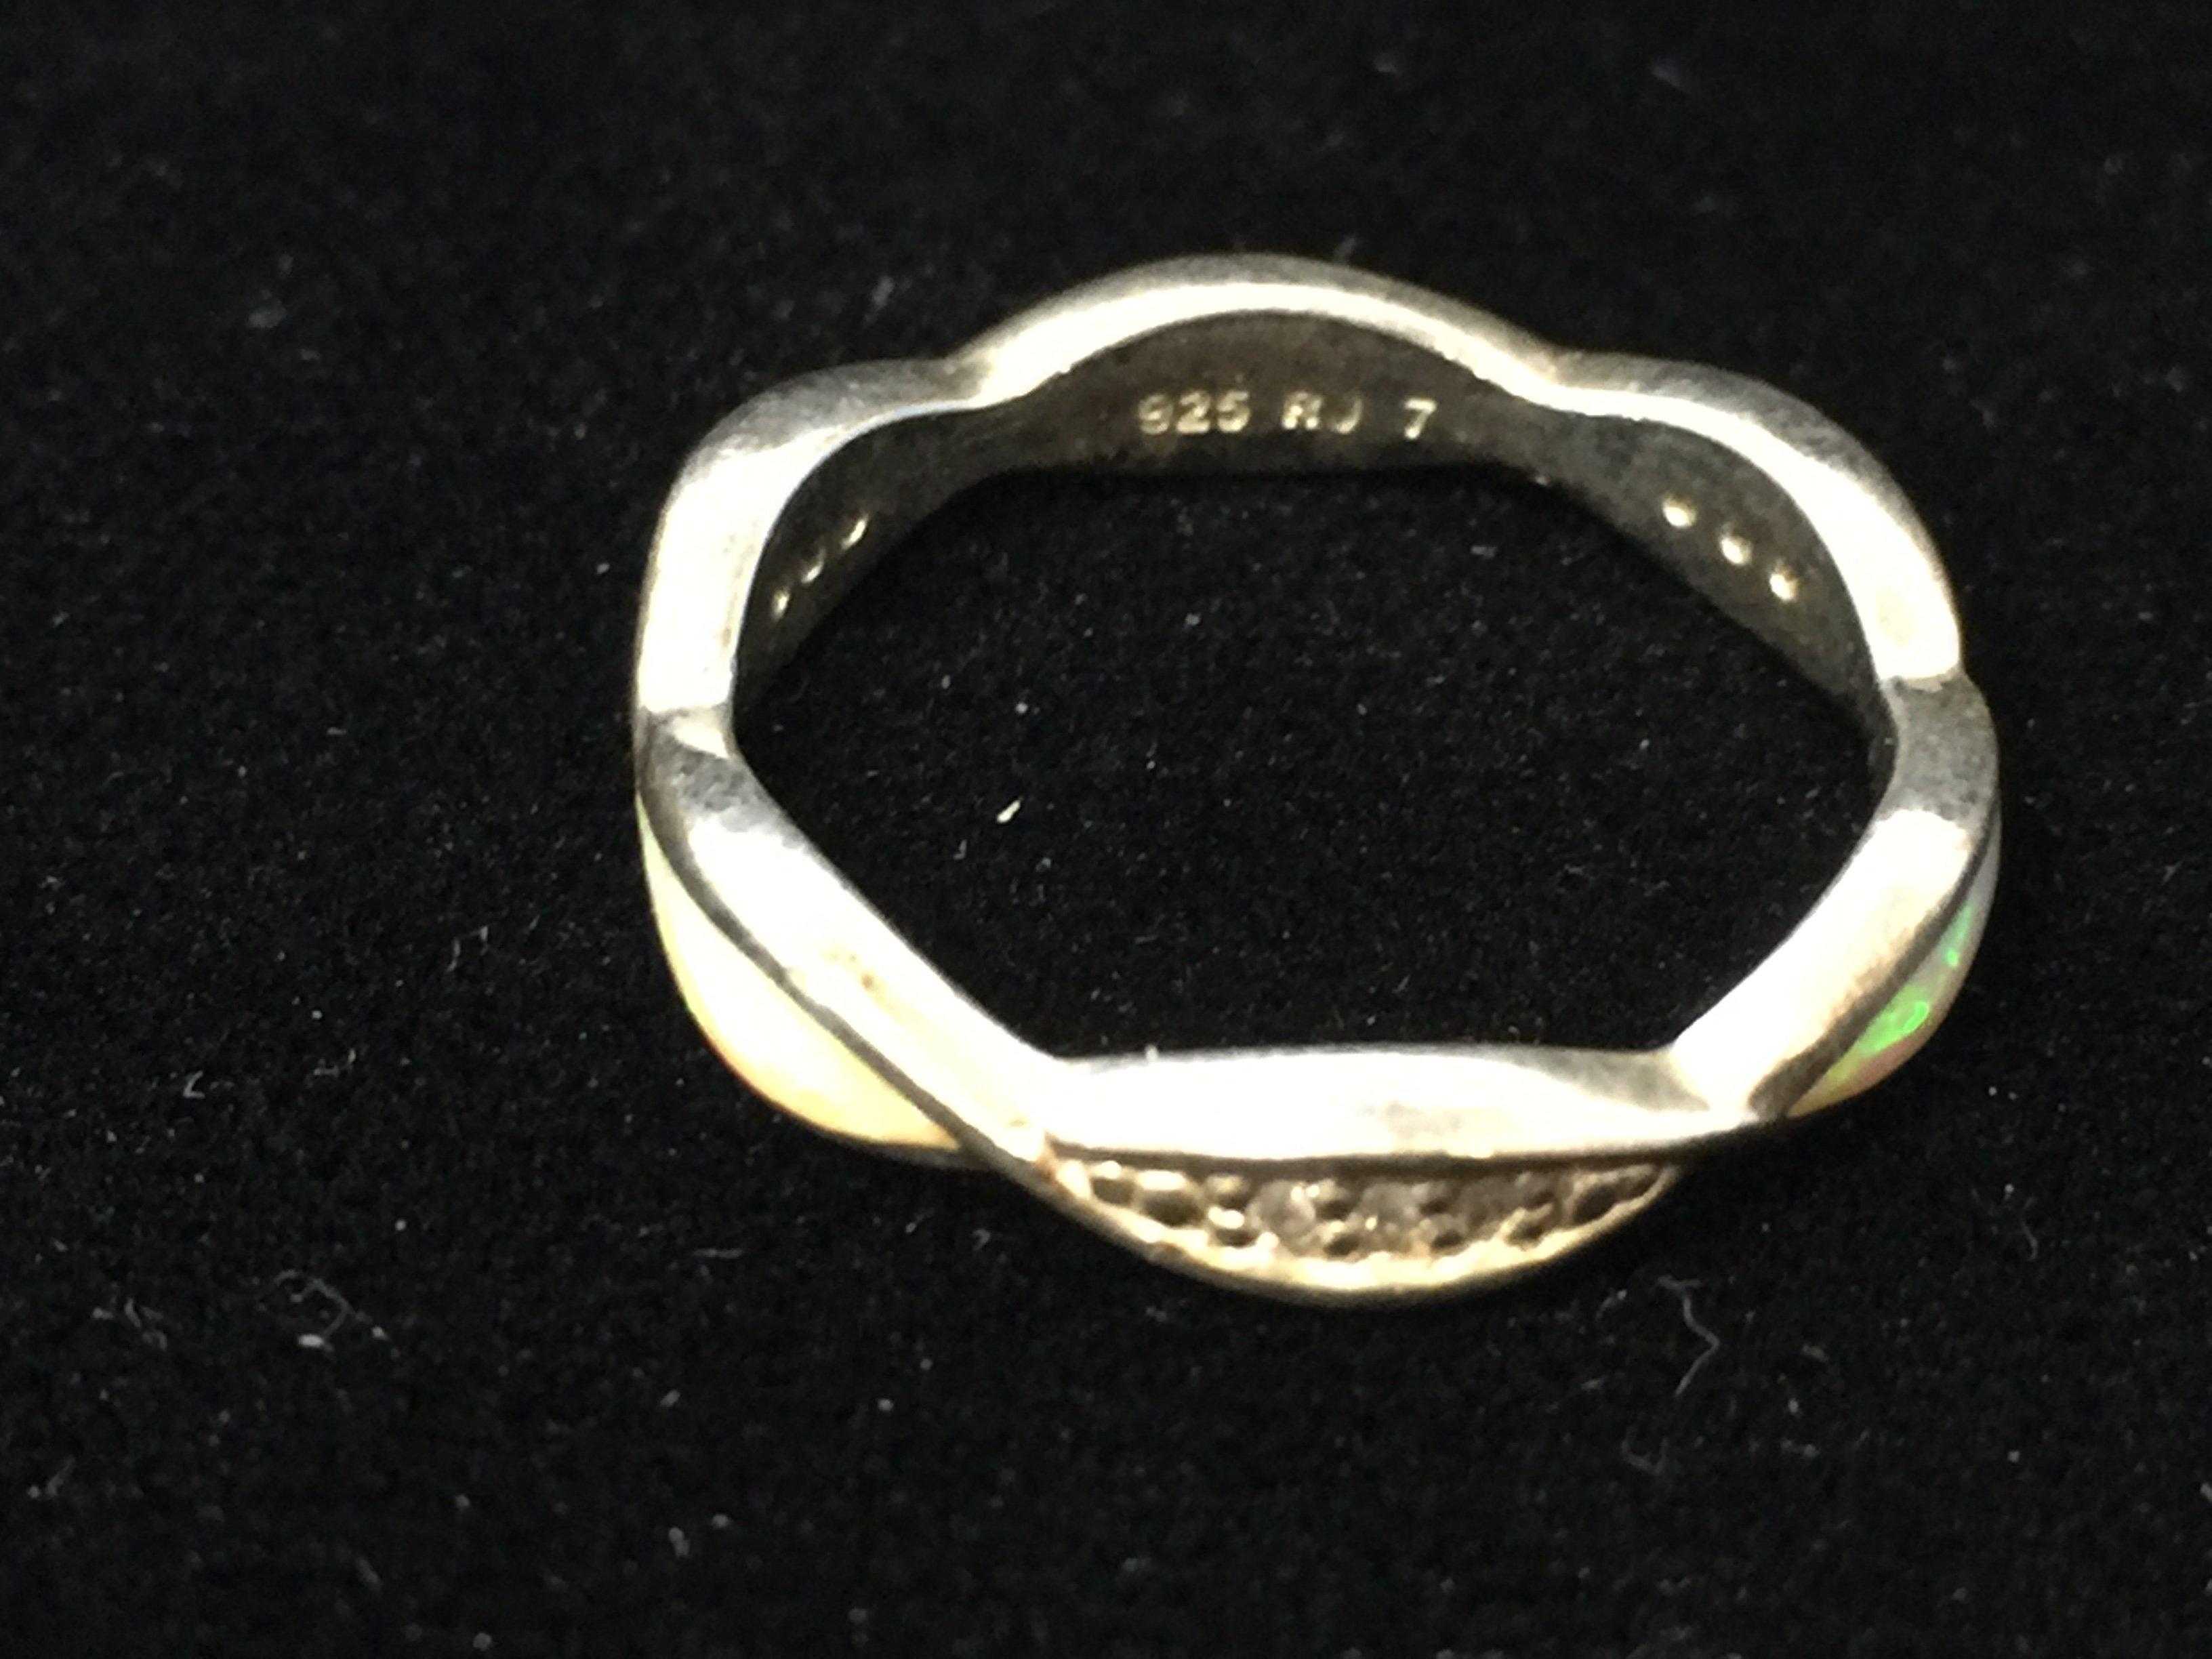 RJ Sterling Silver Ring W/ Fire Opal & Diamond